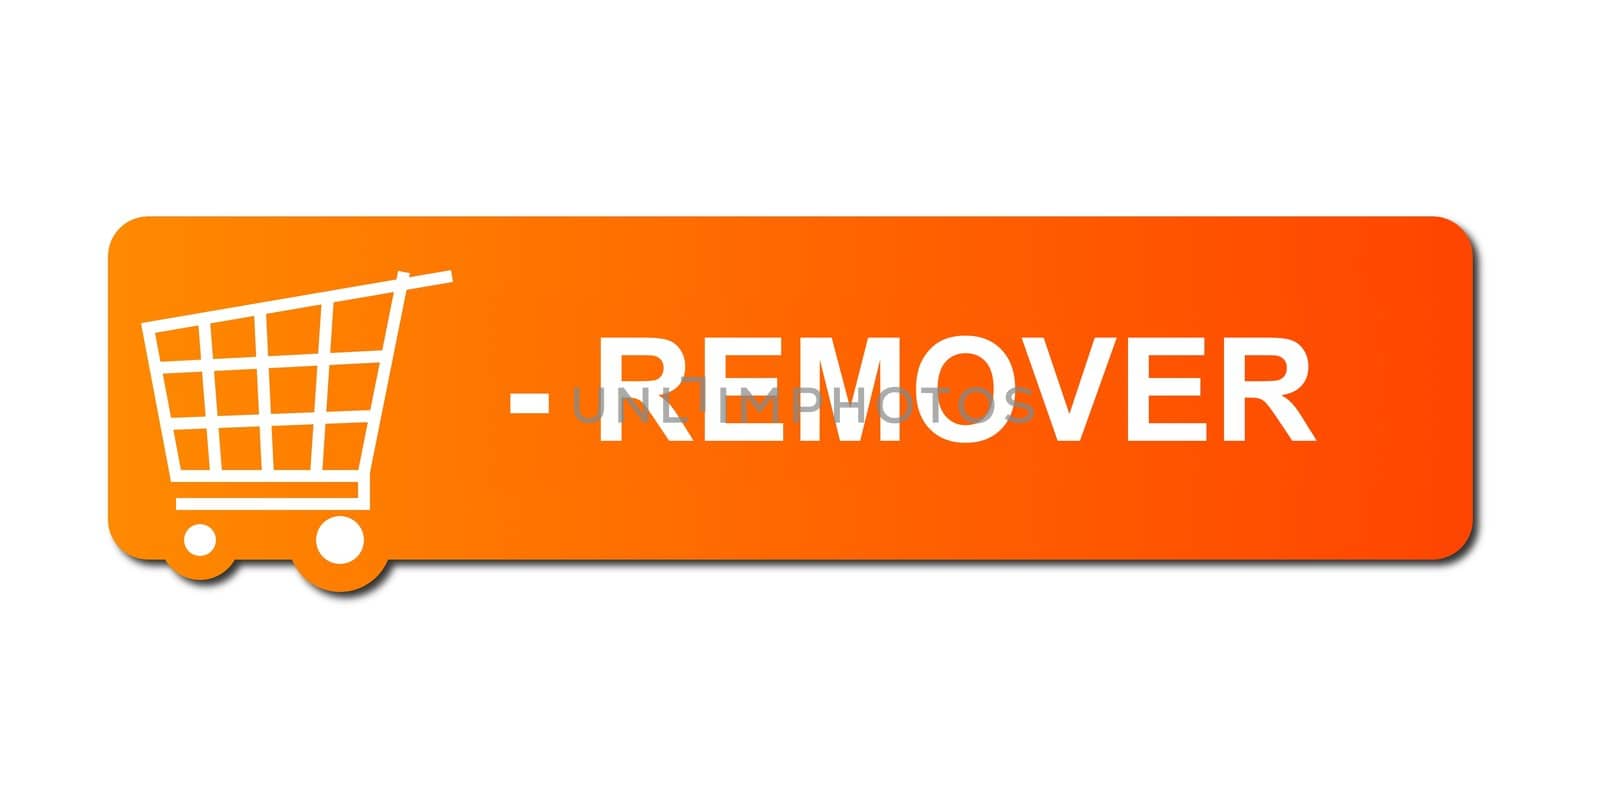 Remover Orange by hlehnerer